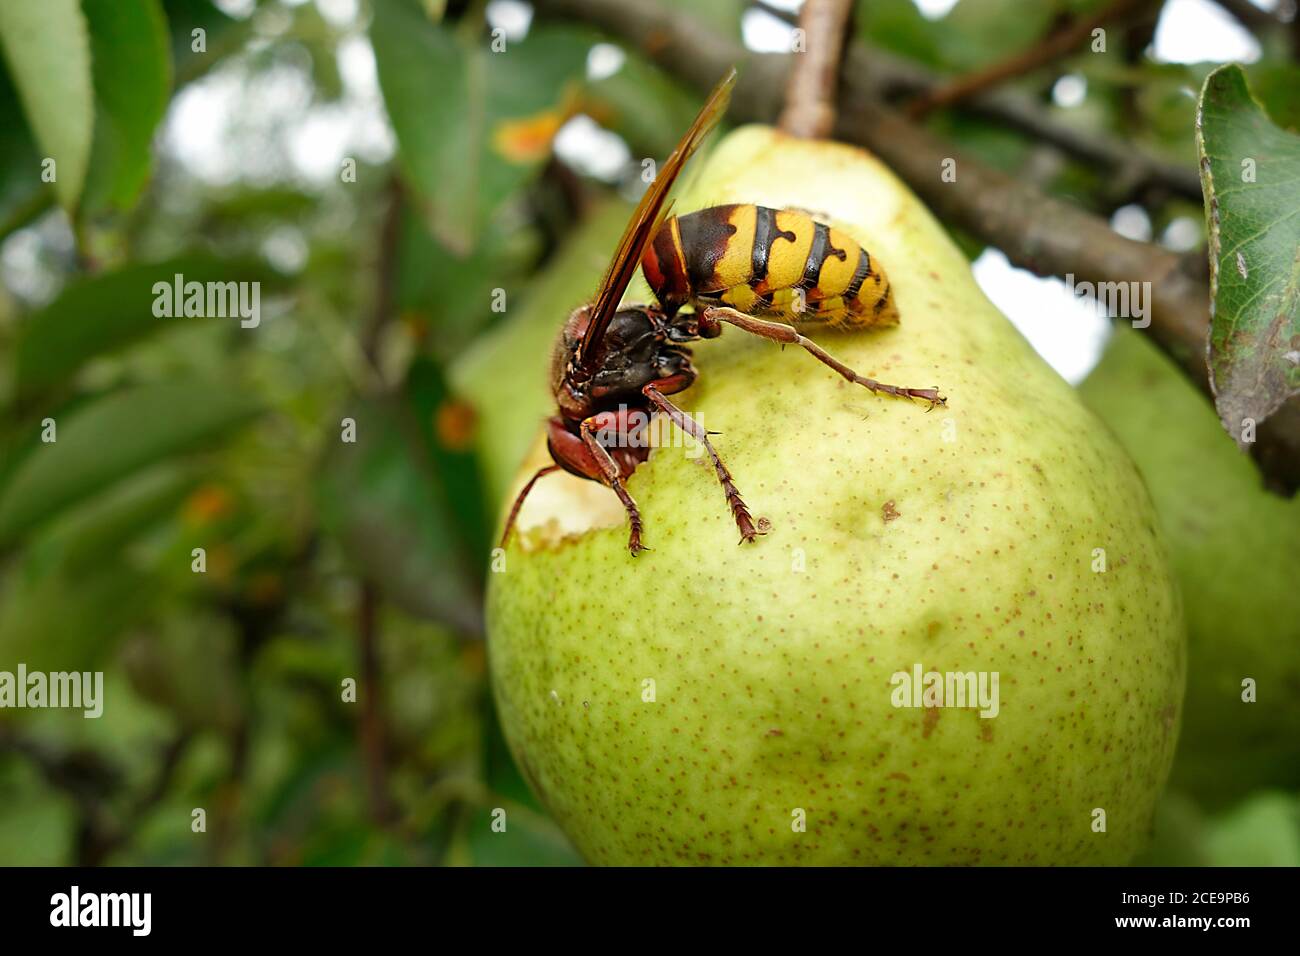 hornet européen (vespa Crabro) se nourrissant de la poire mûre. Banque D'Images